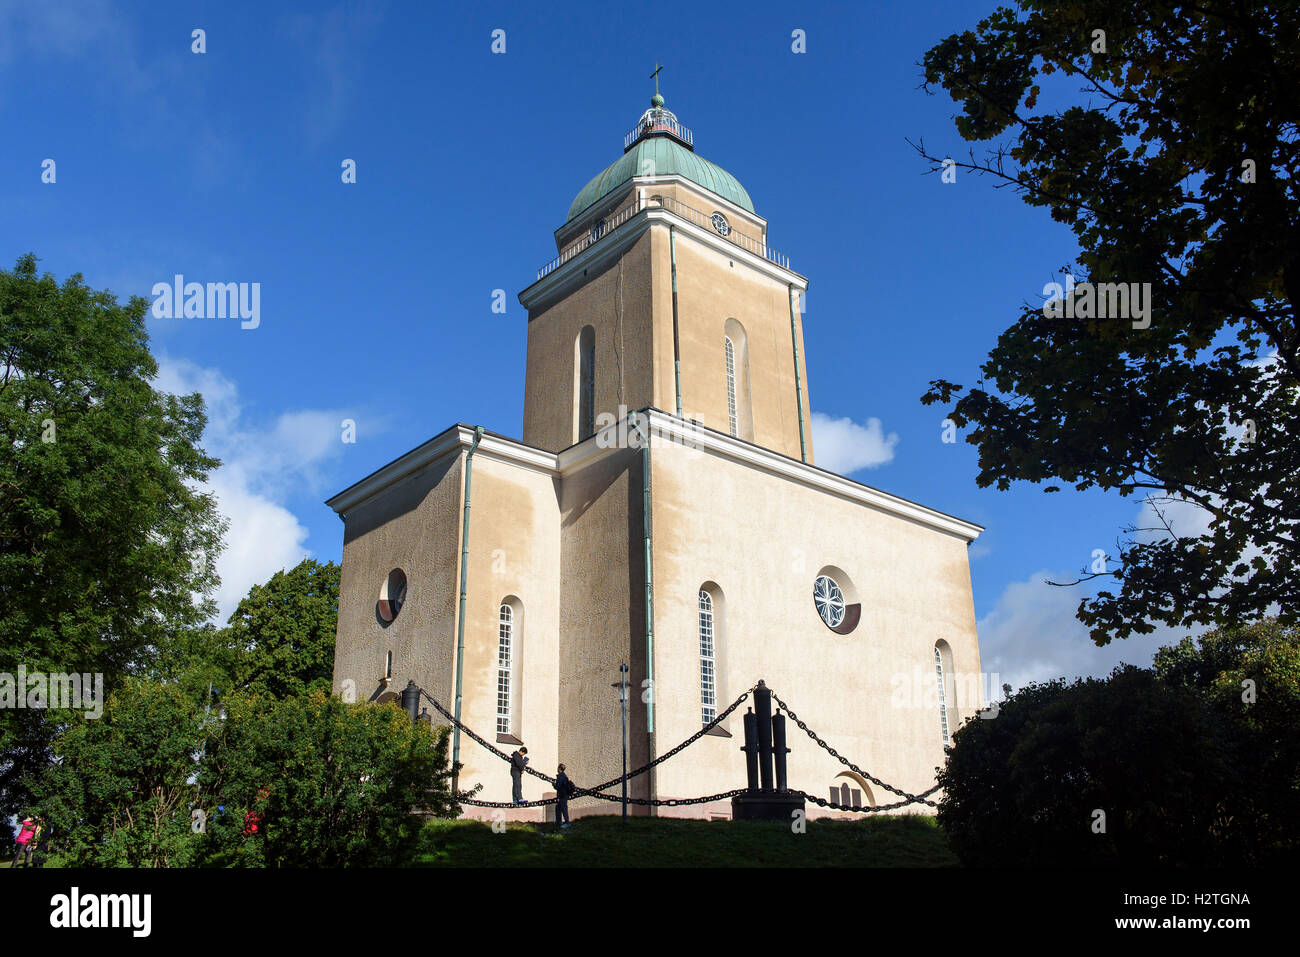 Dans Suomemlinna l'église forteresse, Helsinki, Finlande, site du patrimoine mondial de l'UNESCO Banque D'Images